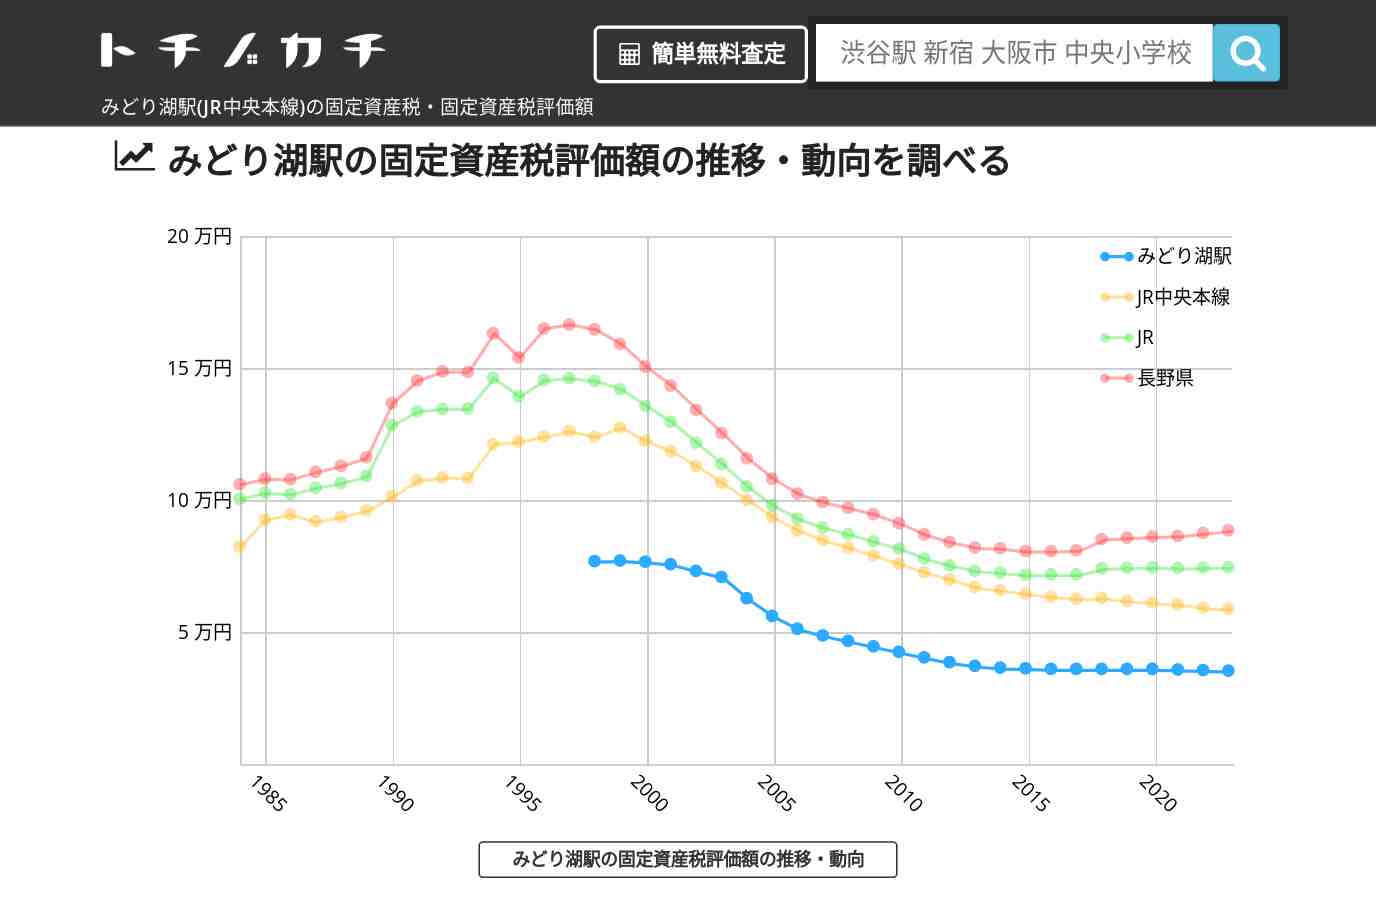 みどり湖駅(JR中央本線)の固定資産税・固定資産税評価額 | トチノカチ